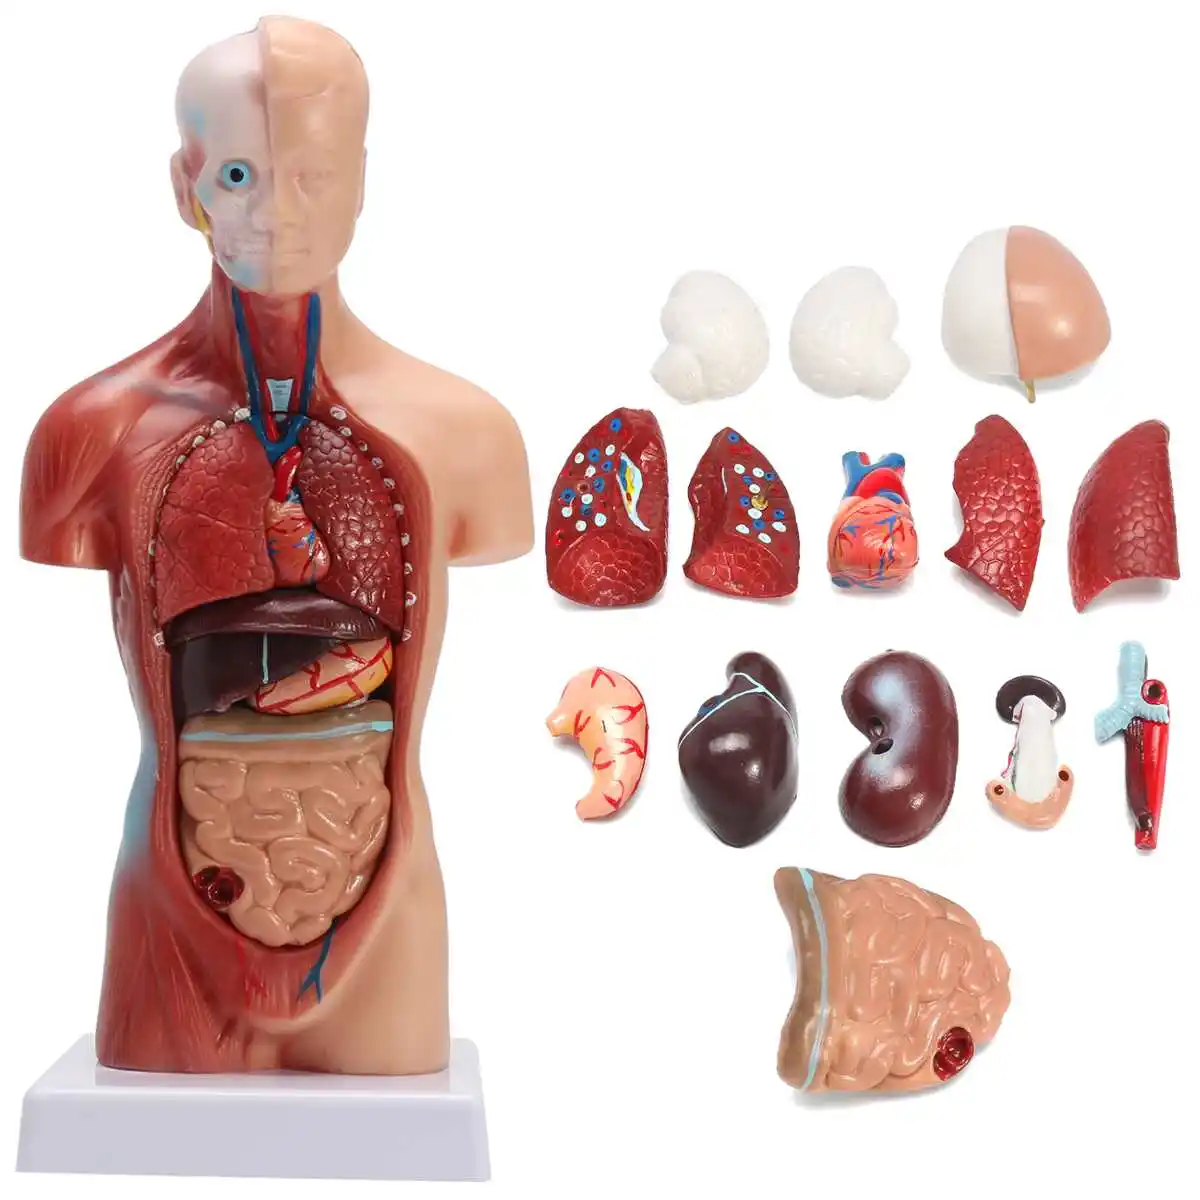 İnsan torso anatomik modeli insan organları visseral kas modeli gövde anatomi modeli çıkarılabilir